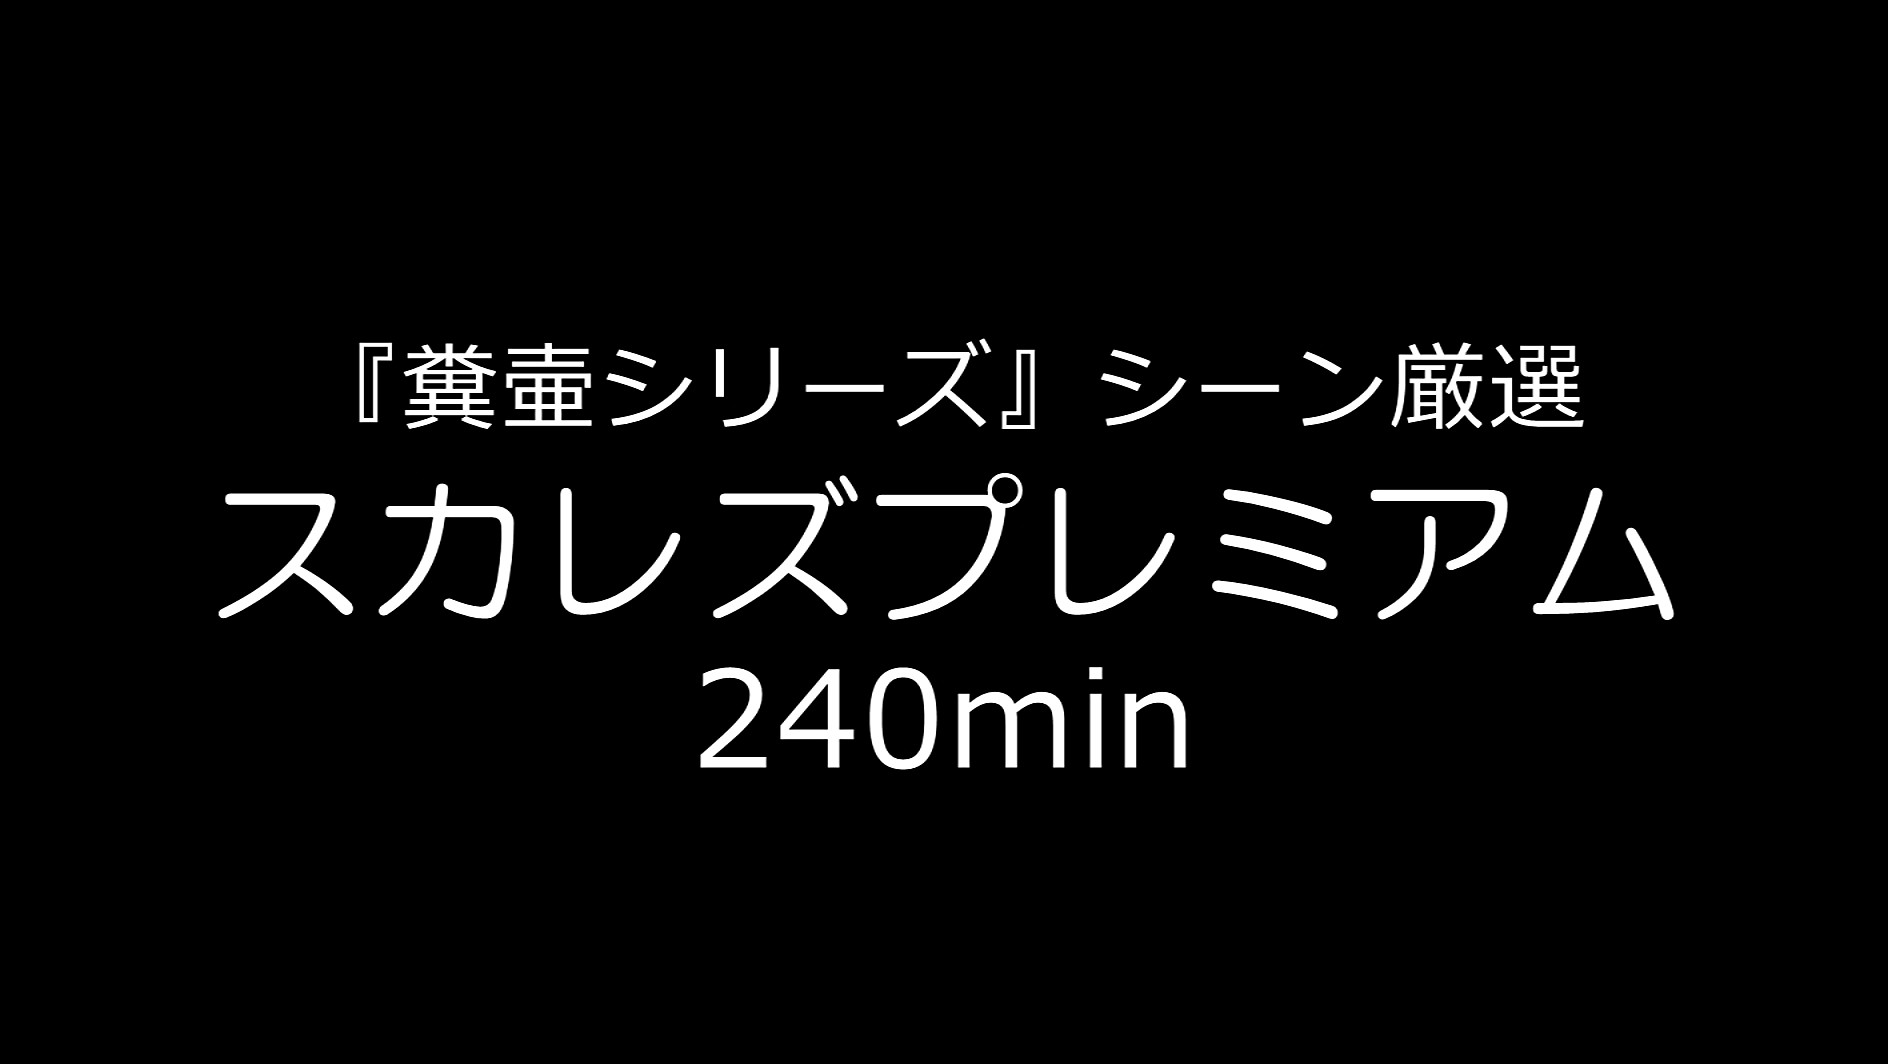 ★【レズ】『糞壷シリーズ』シーン厳選 スカレズプレミアム 240min.